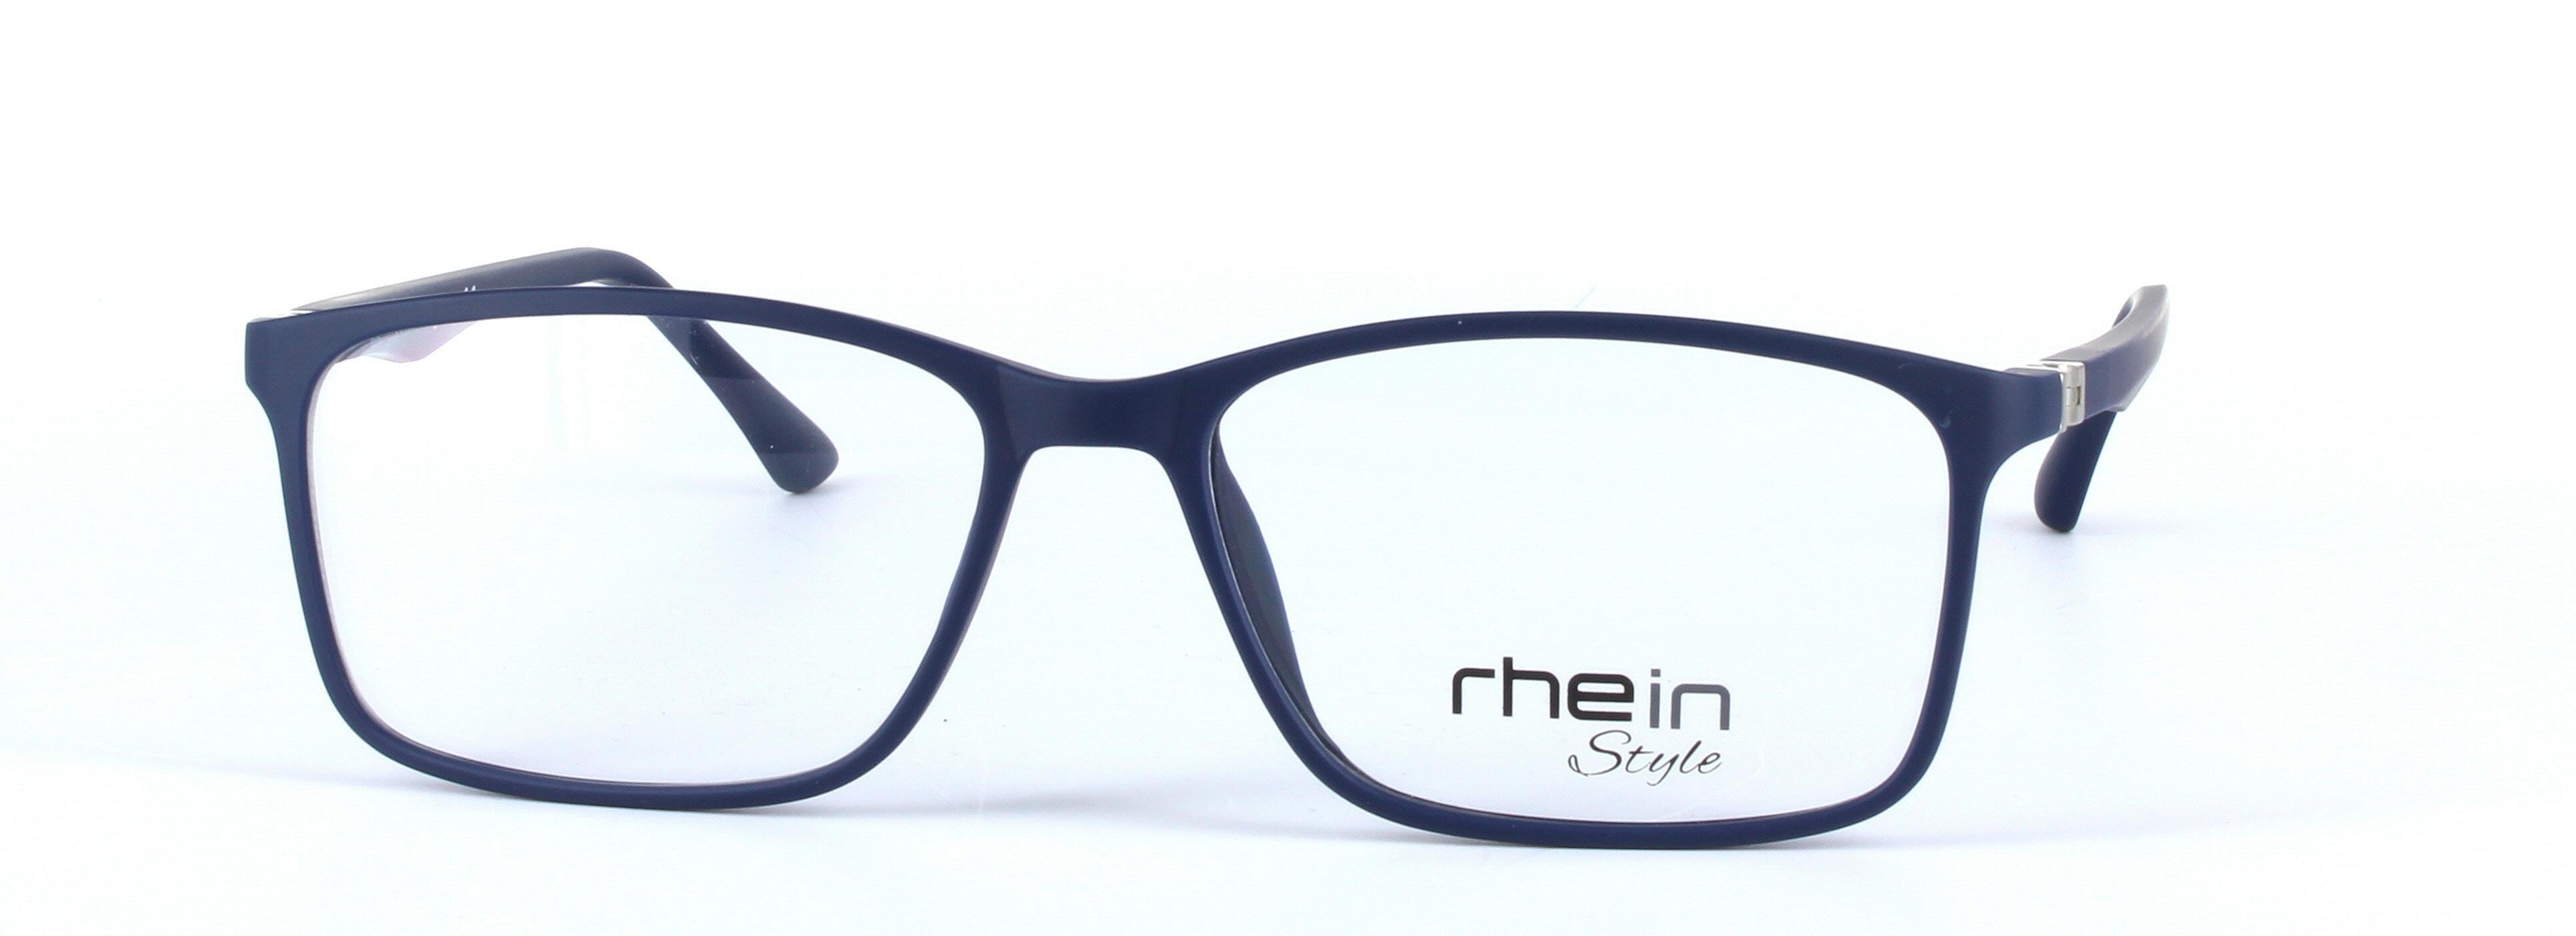 Franky Blue Full Rim Oval Rectangular Plastic Glasses - Image View 5